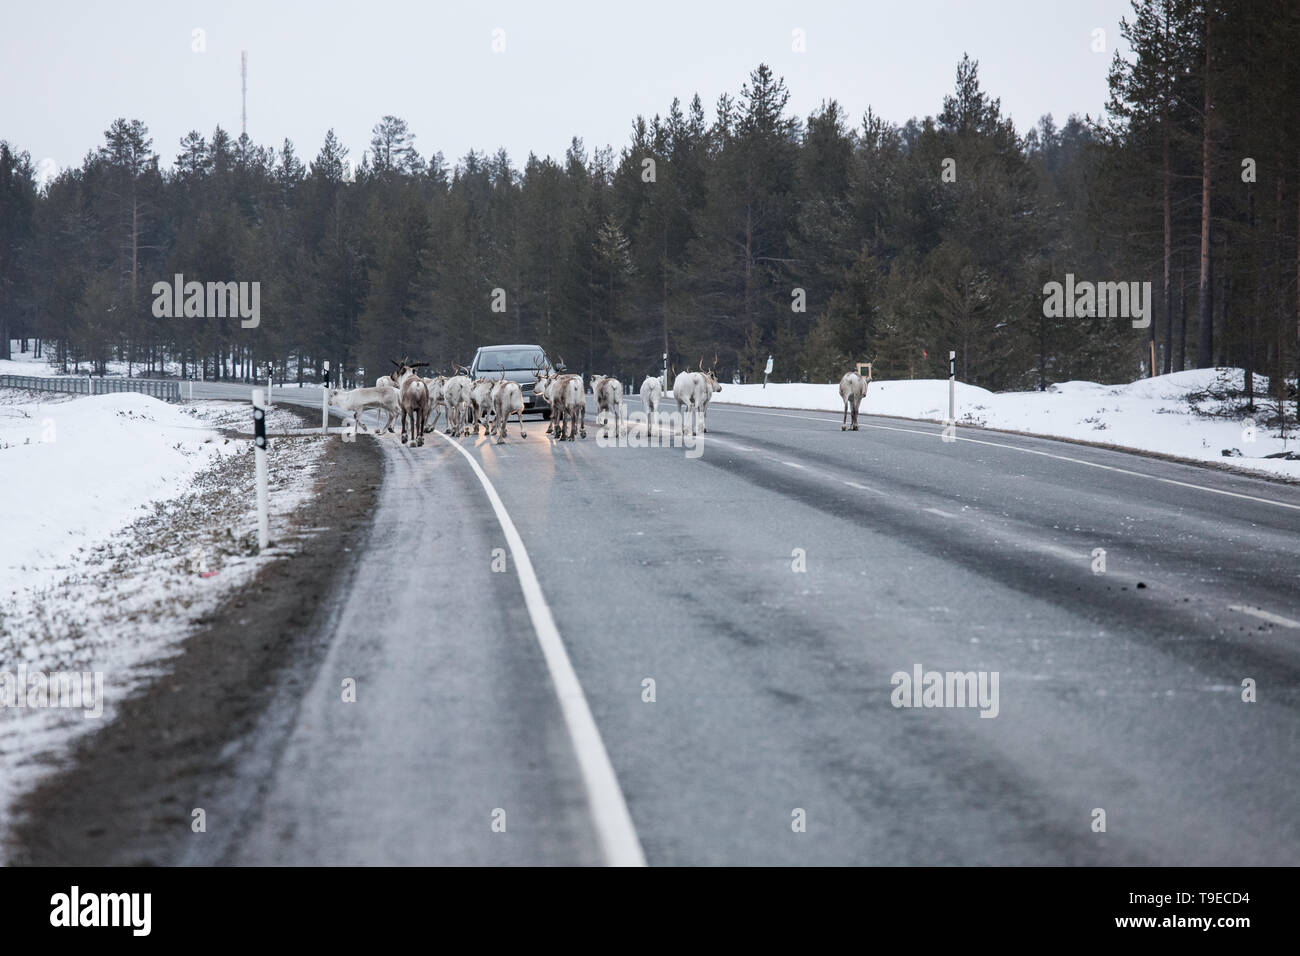 Manada de renos en el camino de la carretera Foto de stock